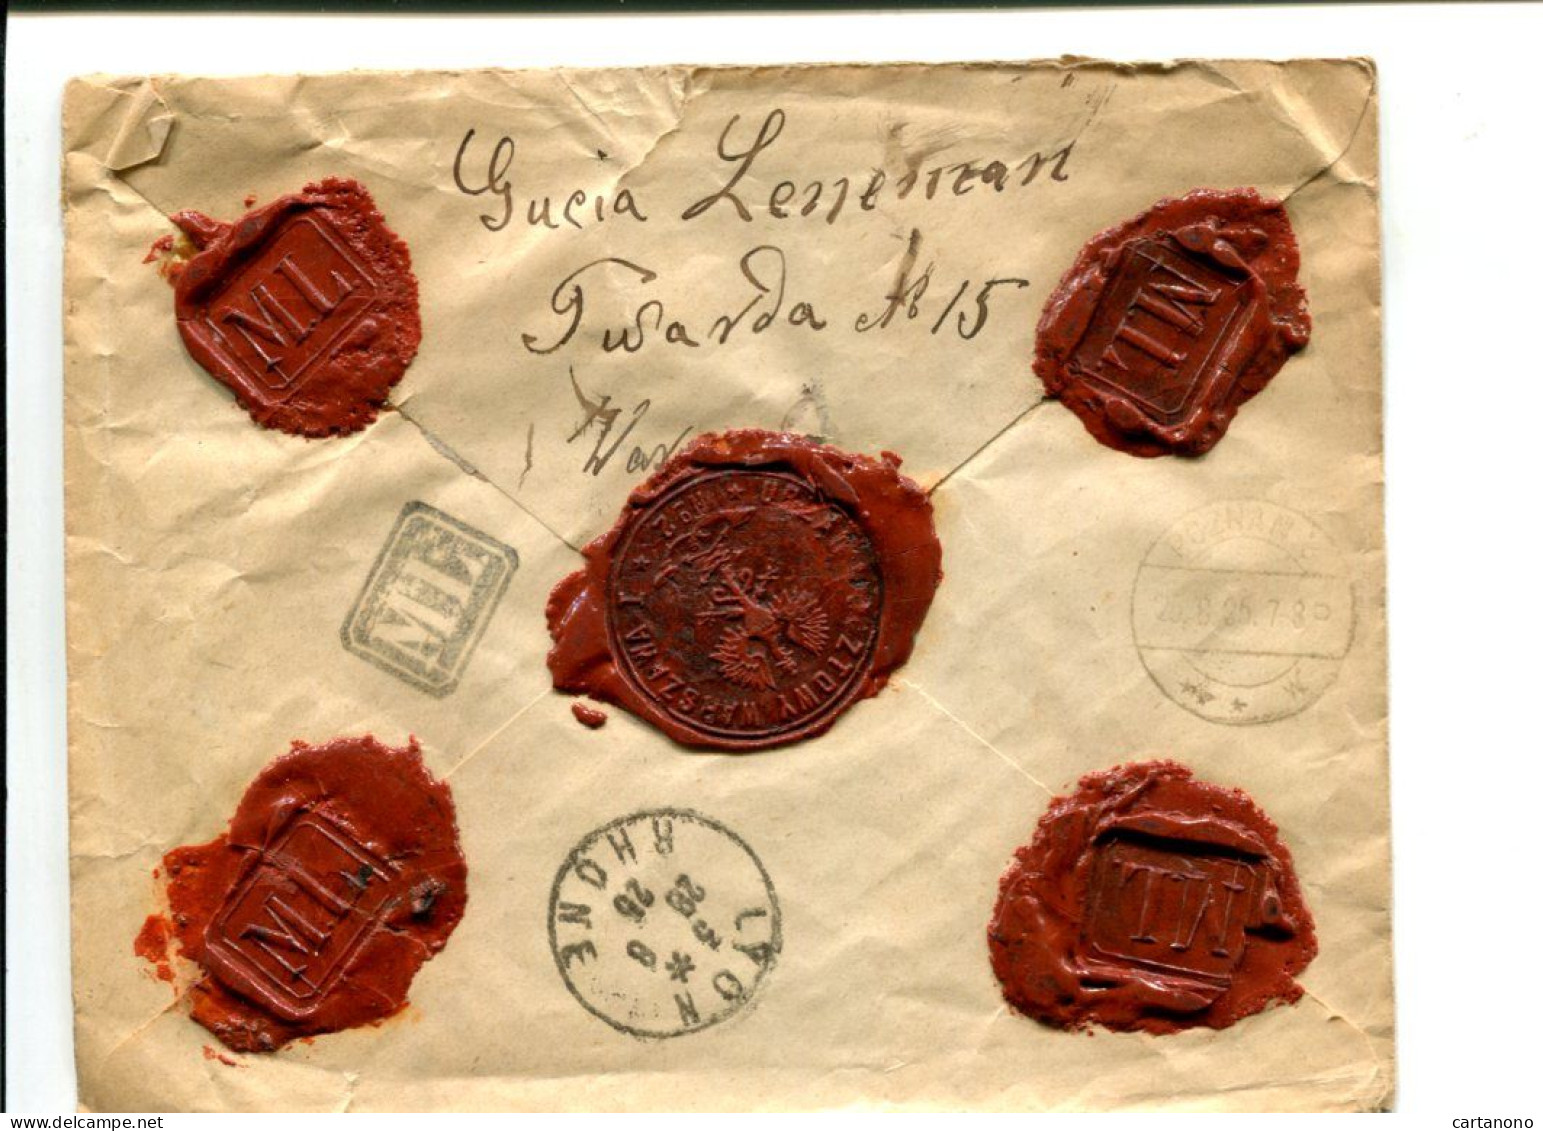 POLOGNE 1925 Lettre Sans Timbre En Valeur Déclarée(?) - Avec Cachets De Cire Au Dos - Cartas & Documentos